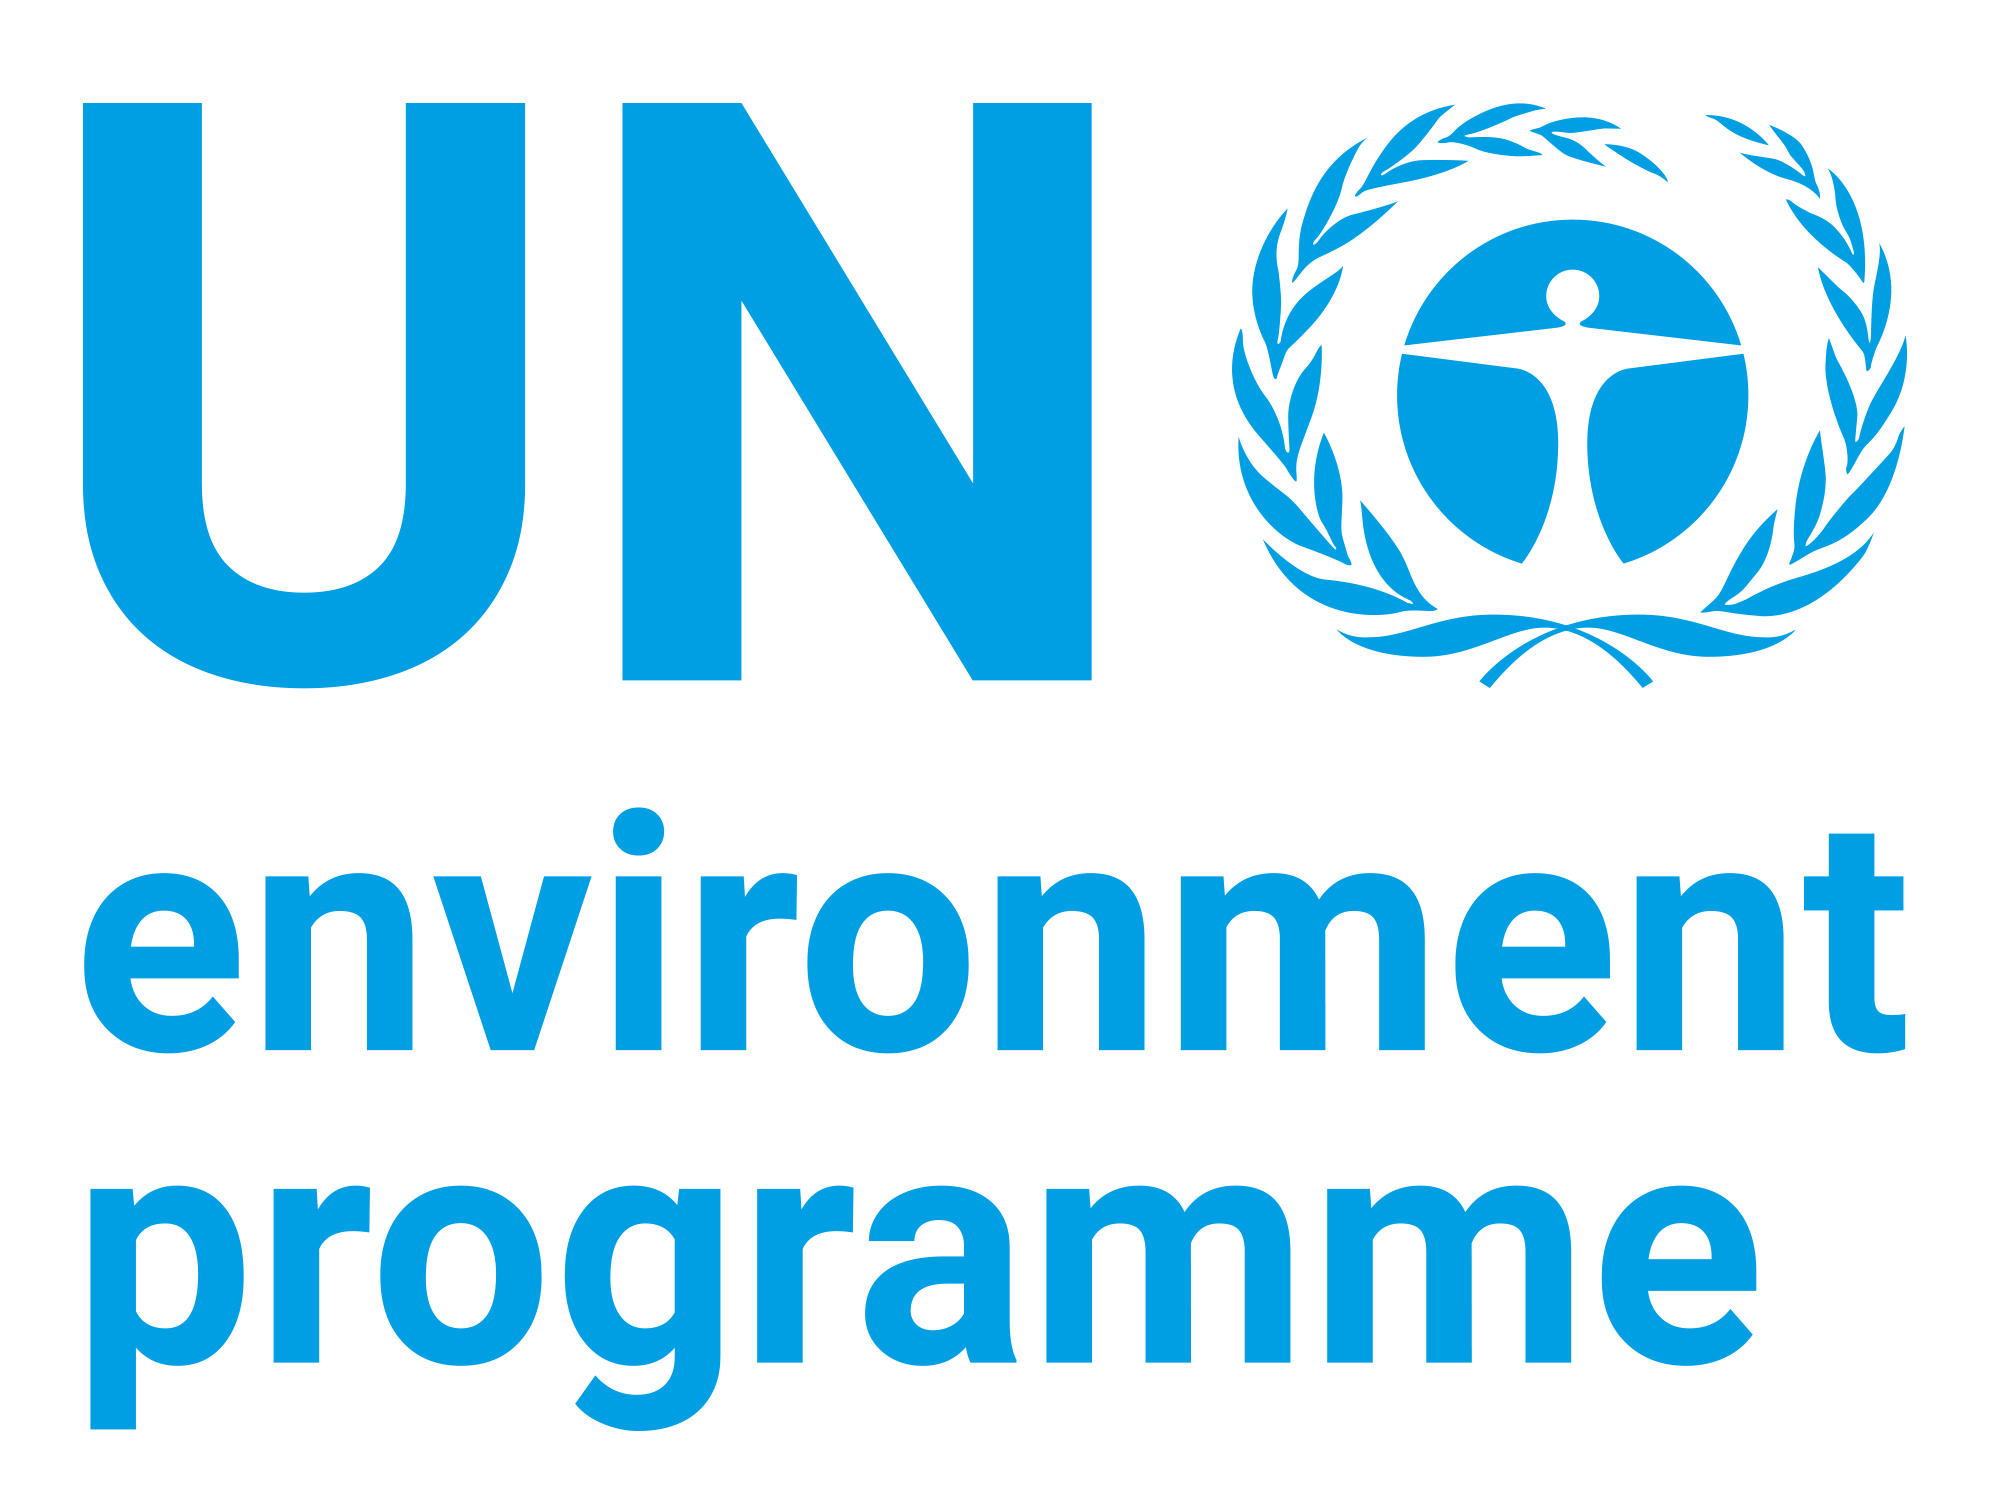 un_environment_logo